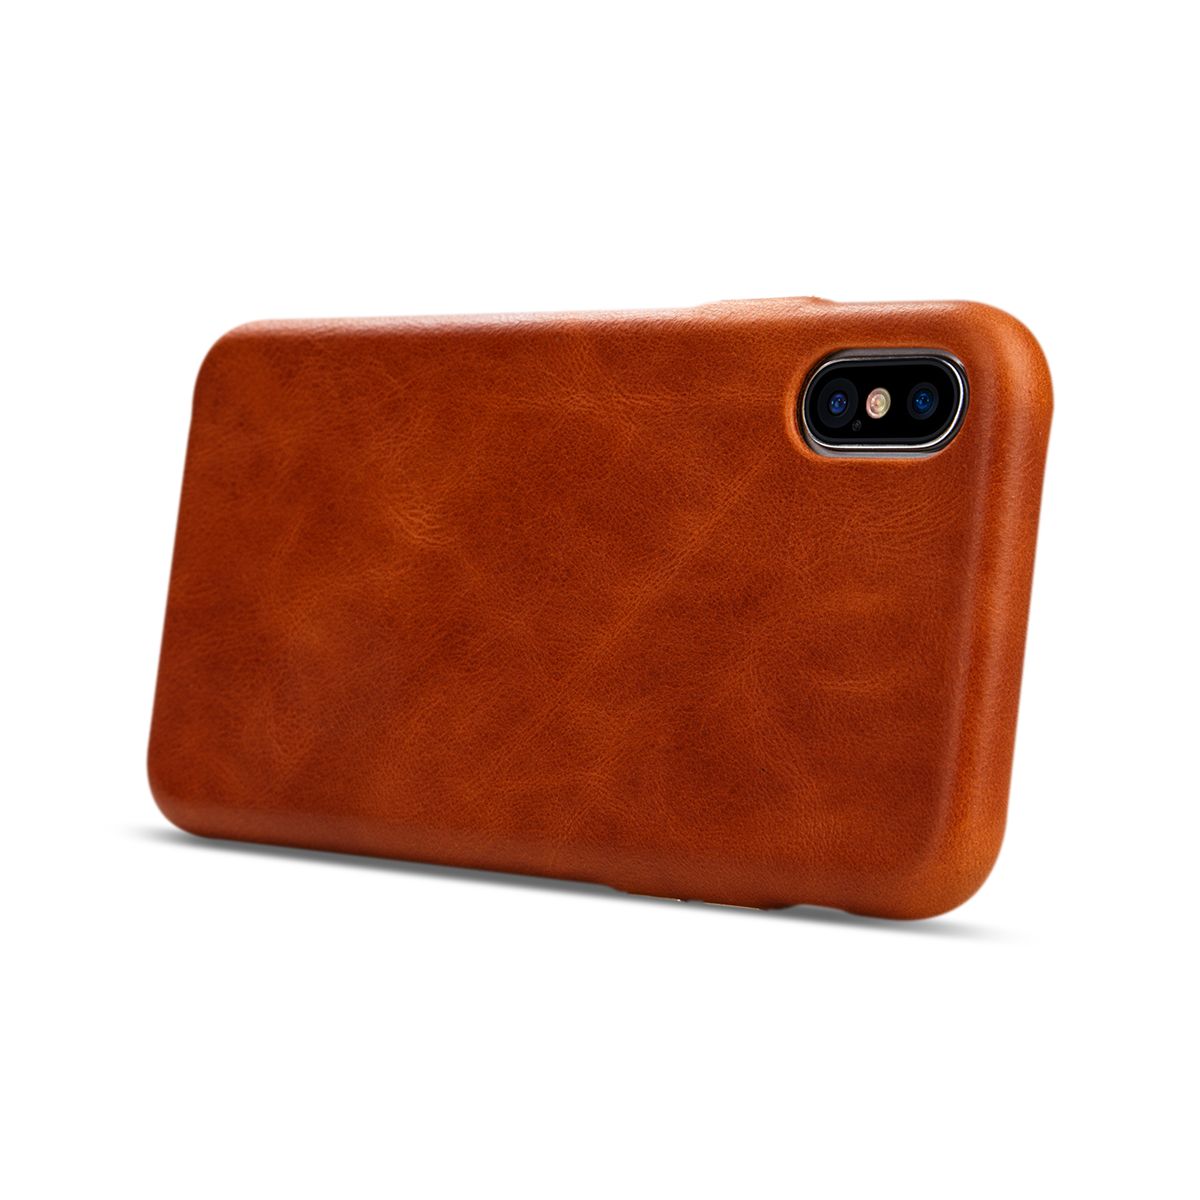 Prémiový obal na iPhone X z prírodnej kože v hnedej farbe. Vyrobený z kvalitnej prémiovej prírodnej kože a ručne spracované hrany (1)